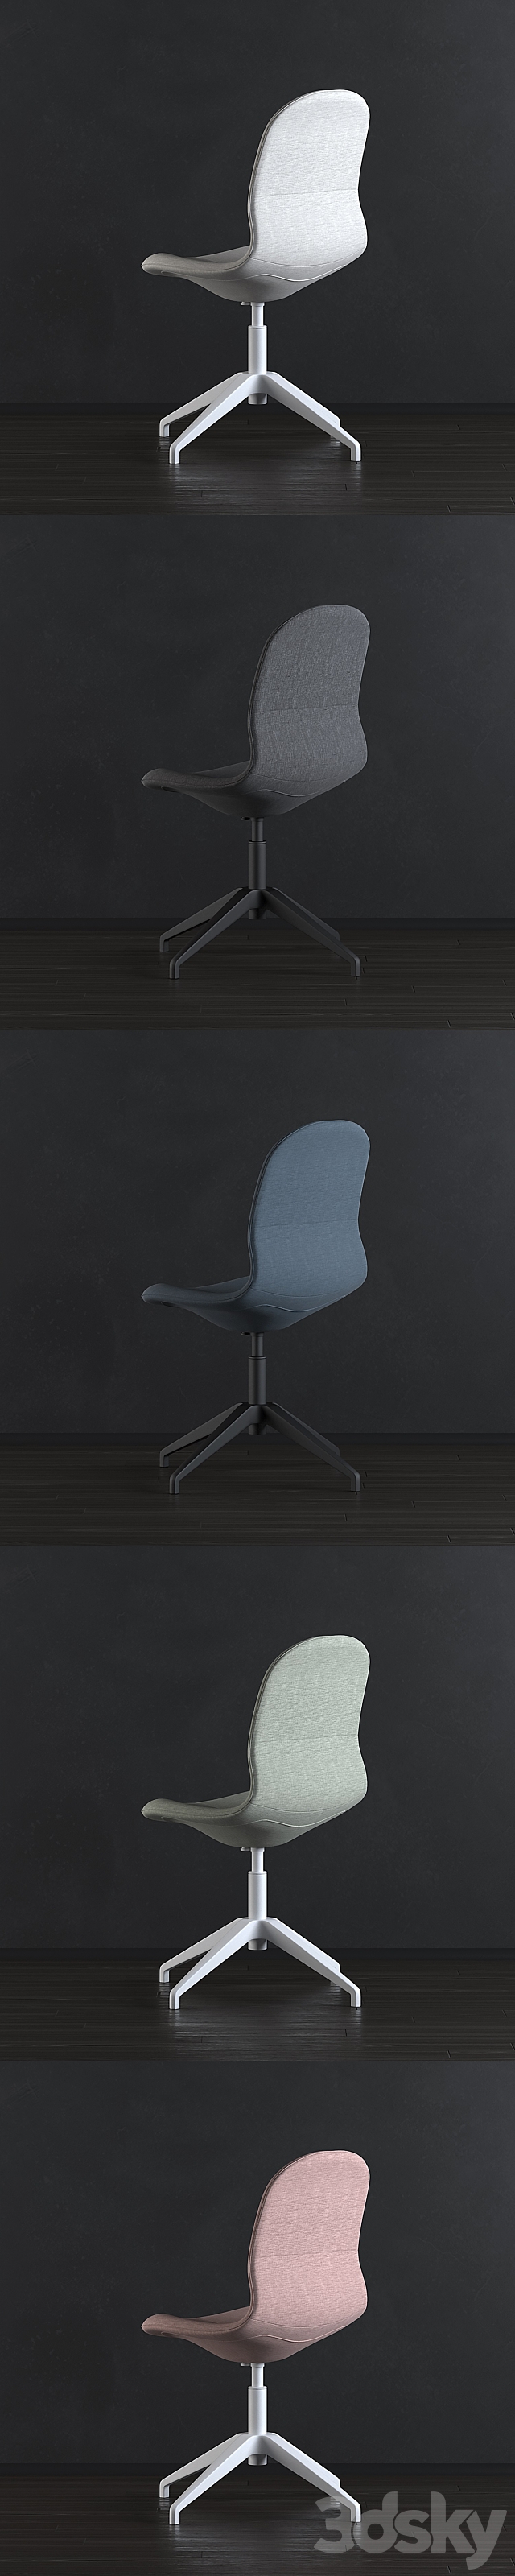 3d models chair  ikea langfjall chair 02